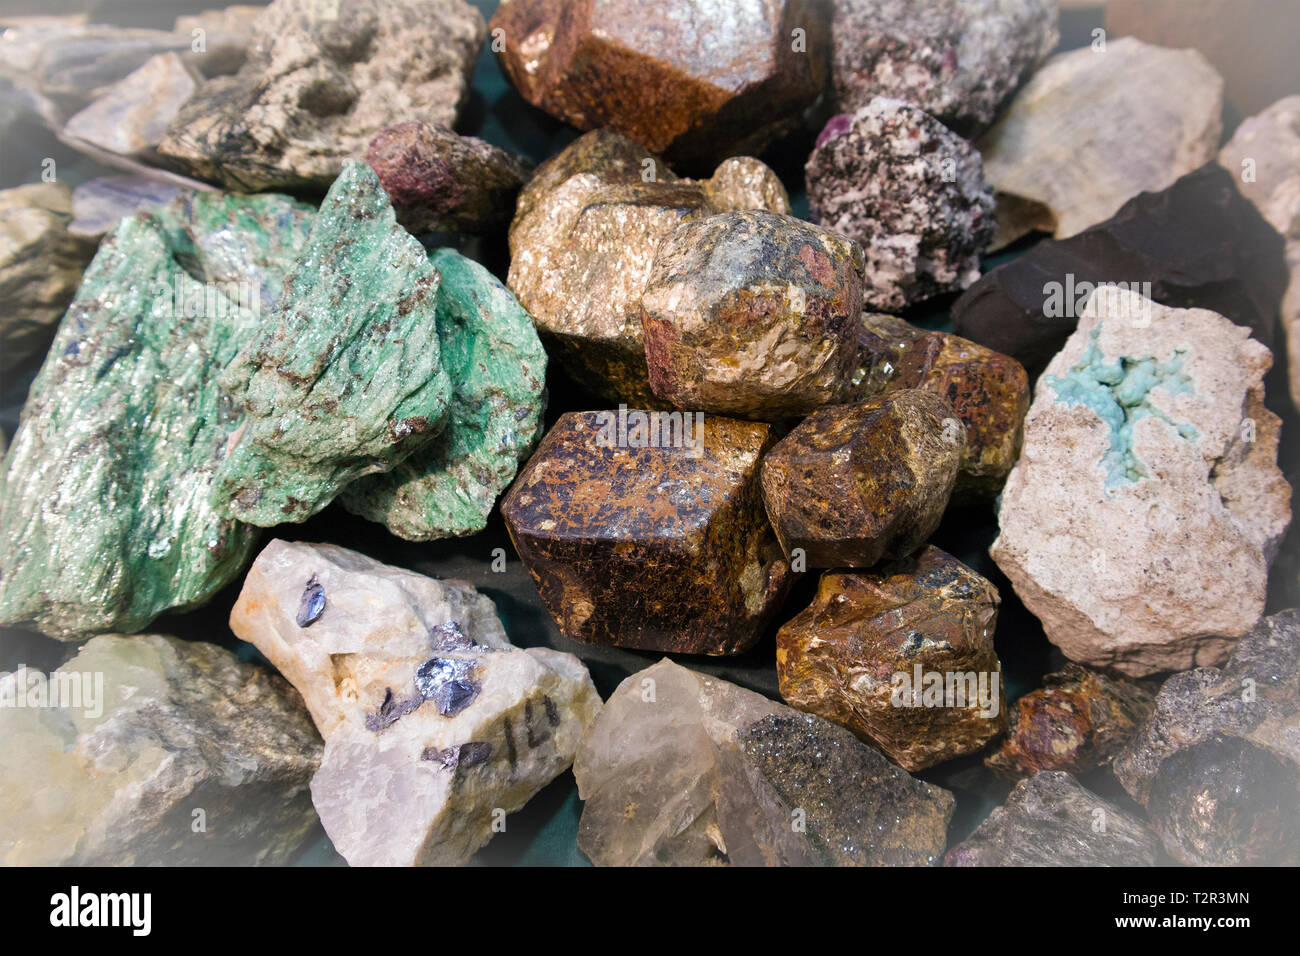 Grand morceau de malachite brute entre autres fragments de pierre à l'exposition de minéraux Banque D'Images